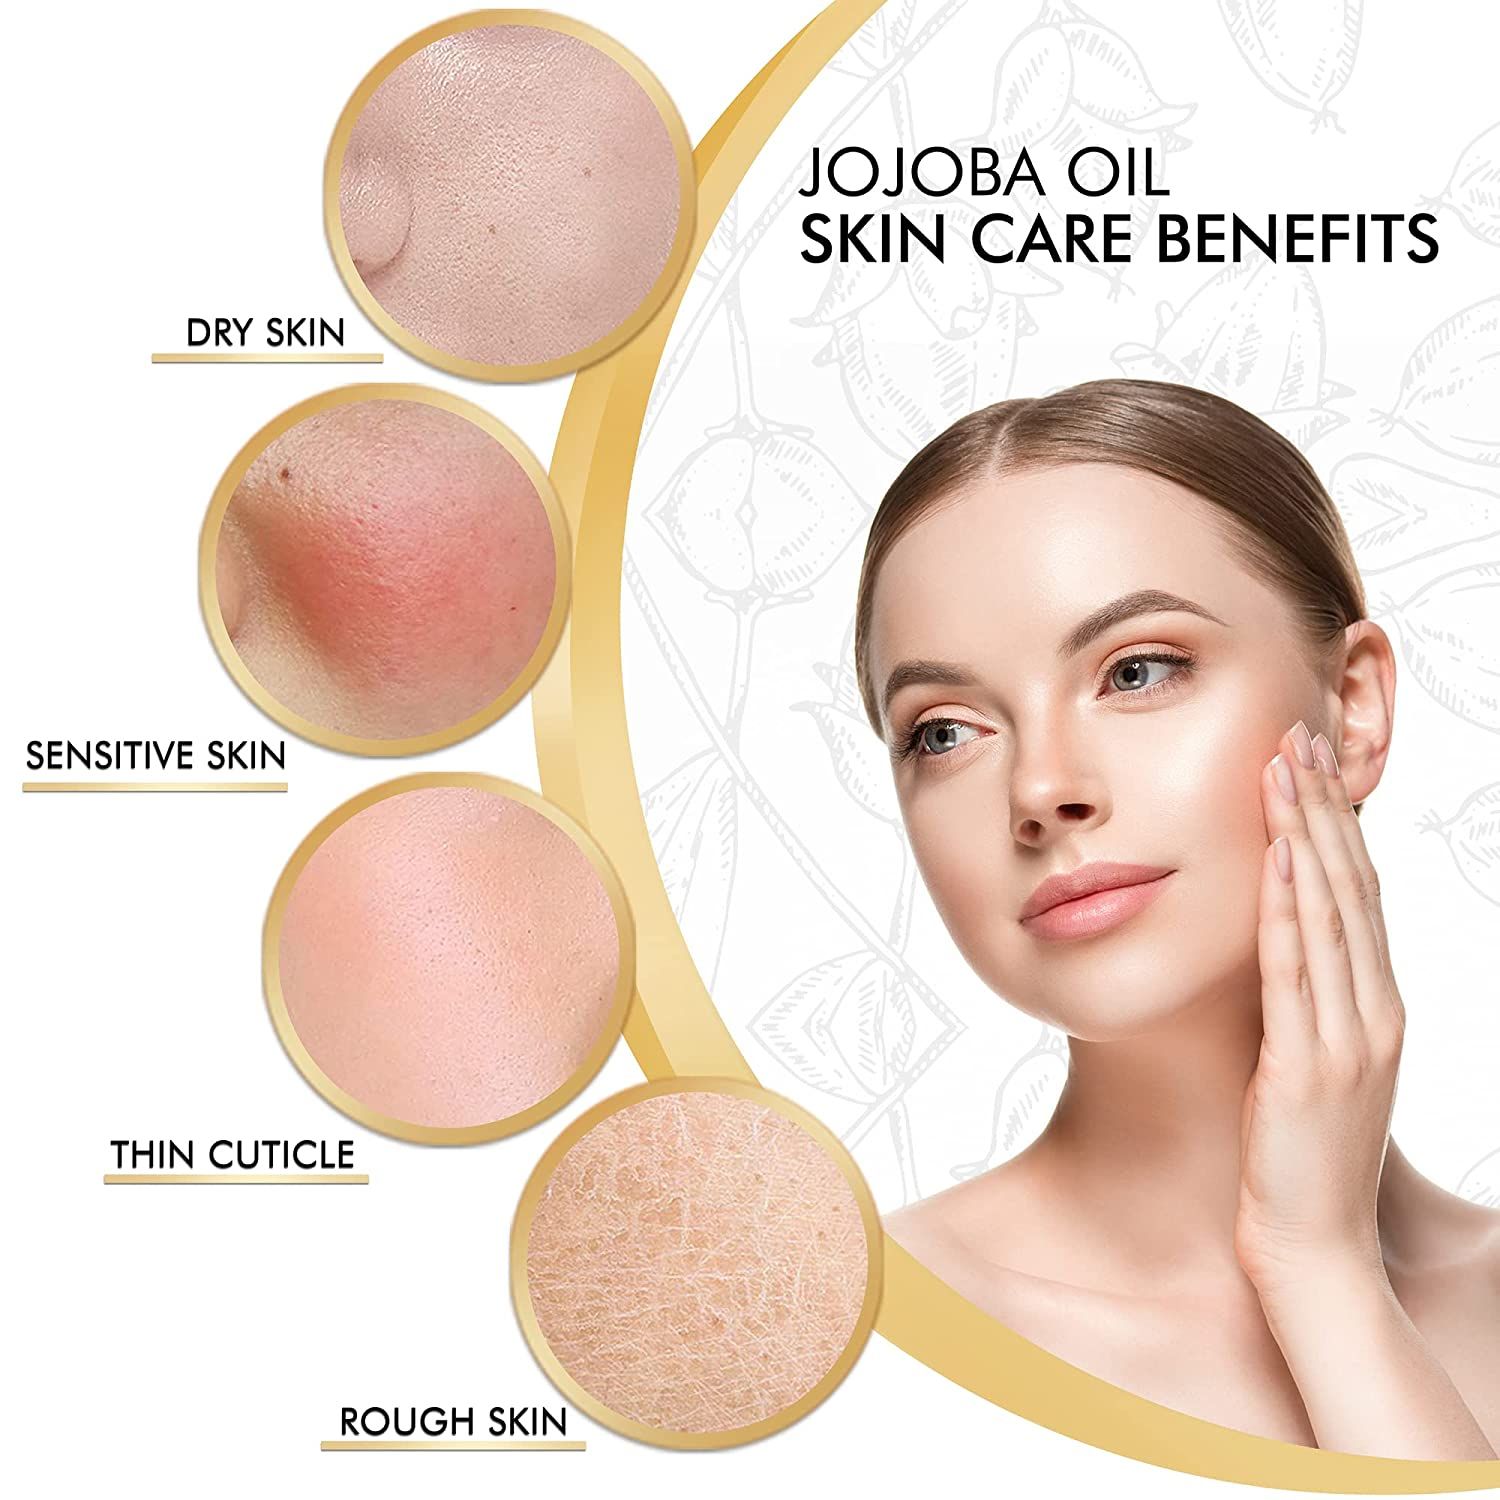 Kanzy Jojobaöl Bio Kaltgepresst 100% Rein Gold für Haut Haare Nägel